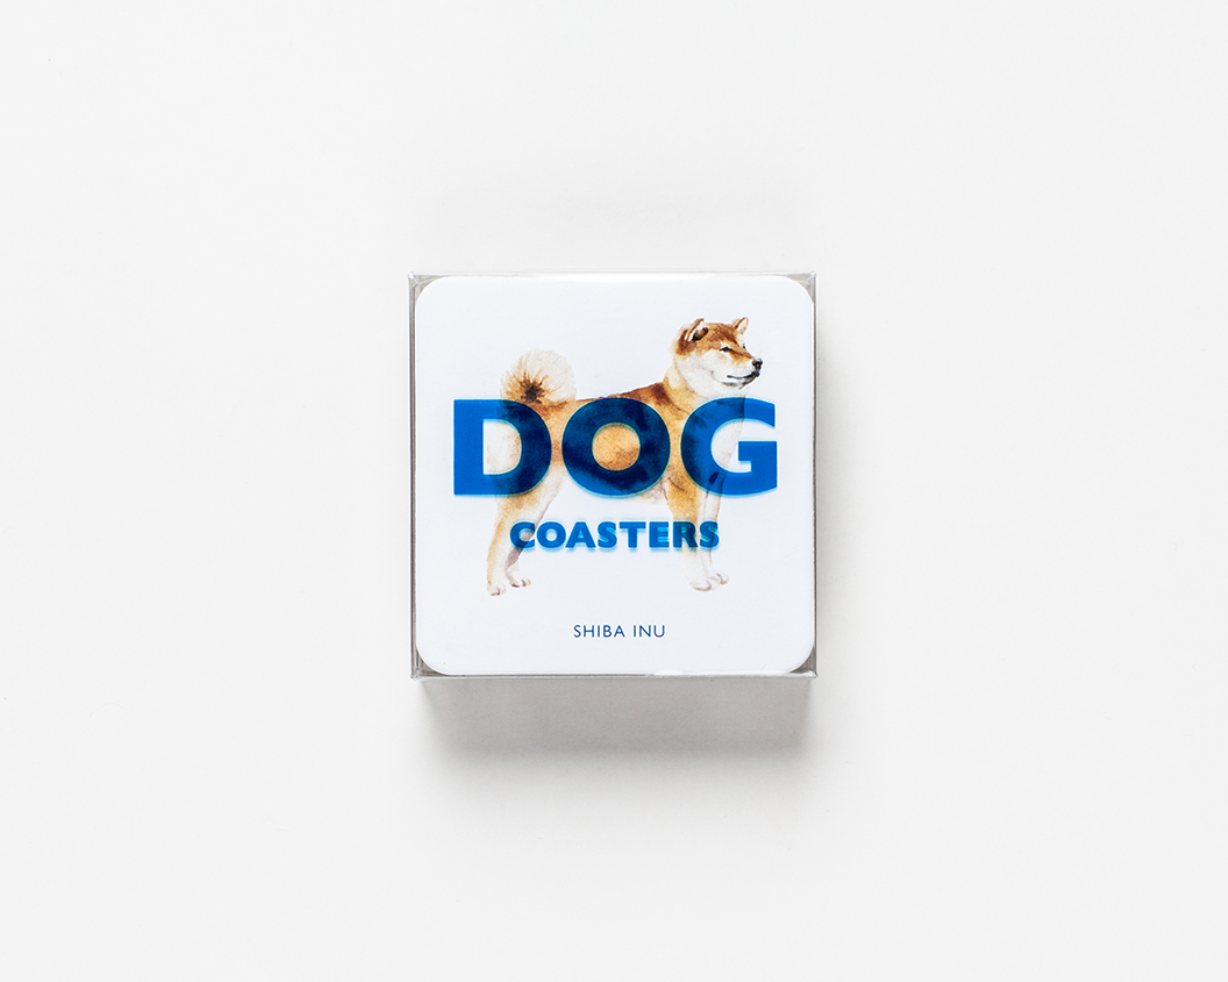 Dog Coasters - Me Books Asia Store